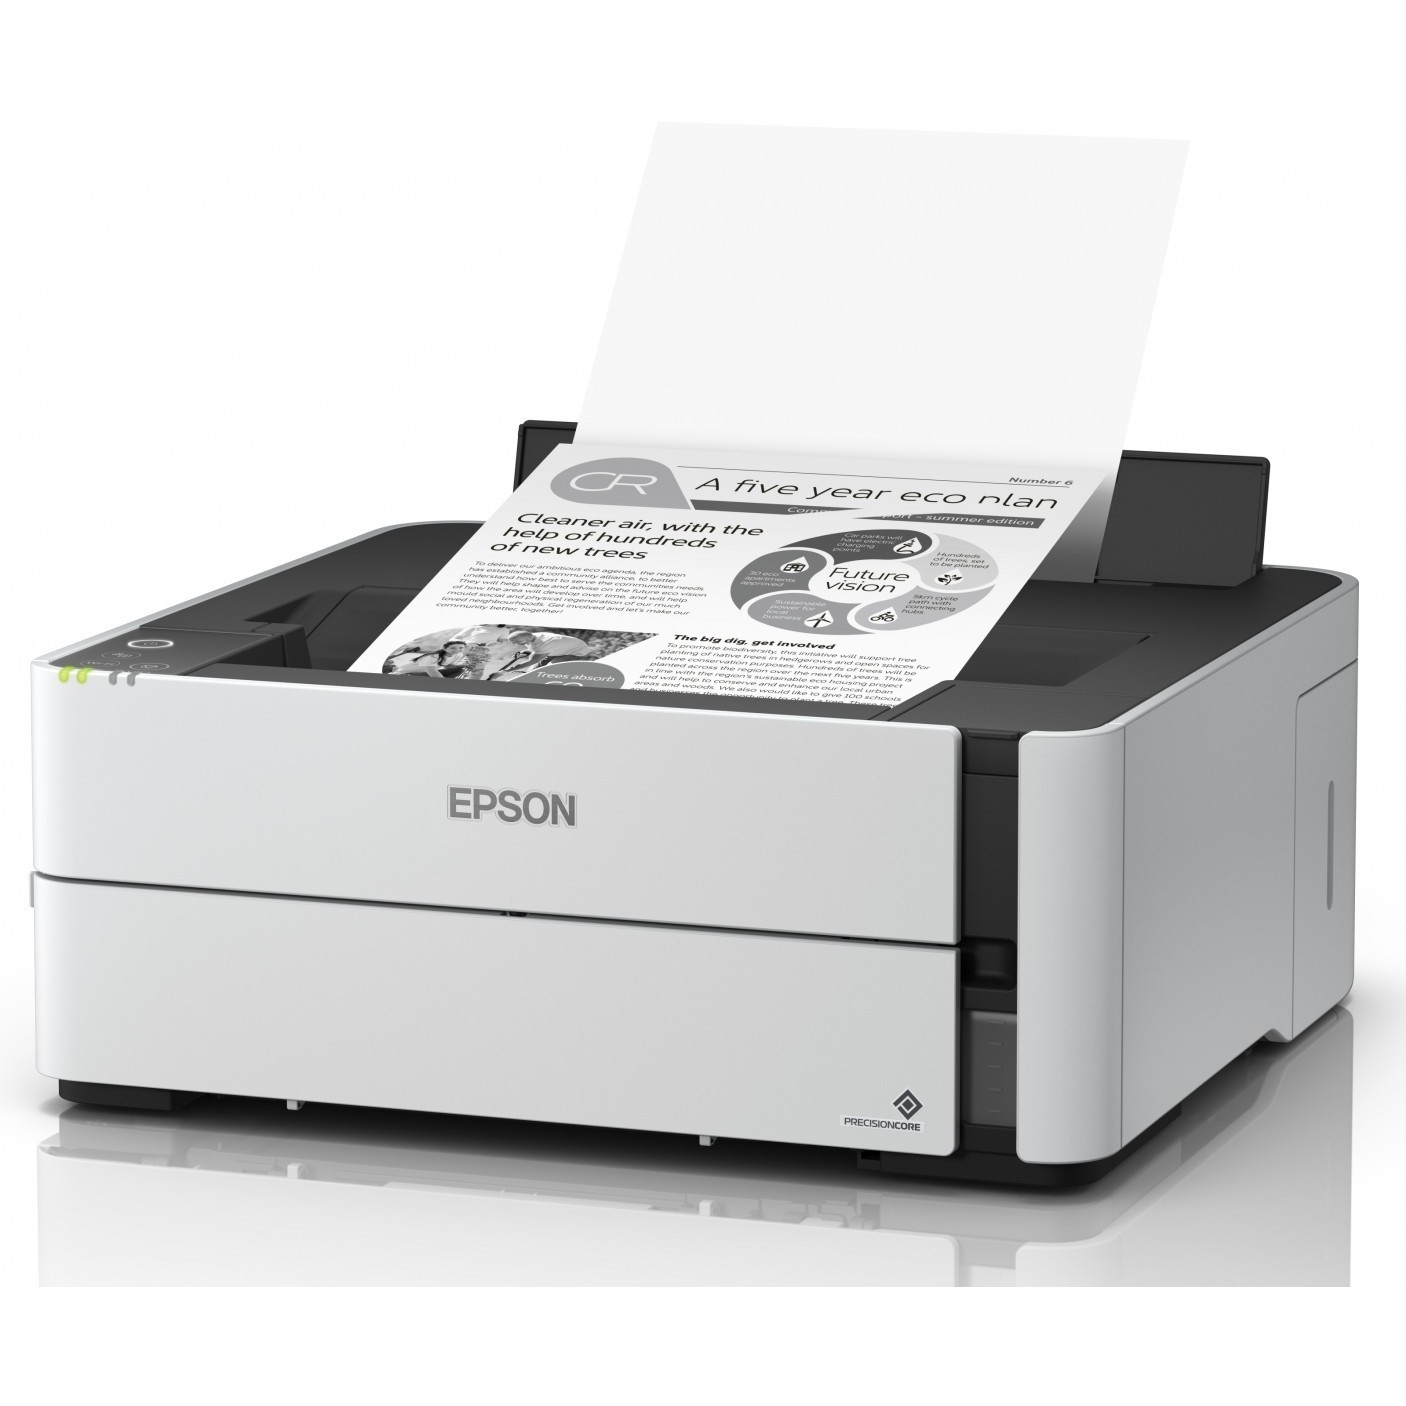 Принтеры в ташкенте. Epson m1140. Принтер Epson m1140. Принтер Epson m1170. Принтер Epson ECOTANK et-m1170.